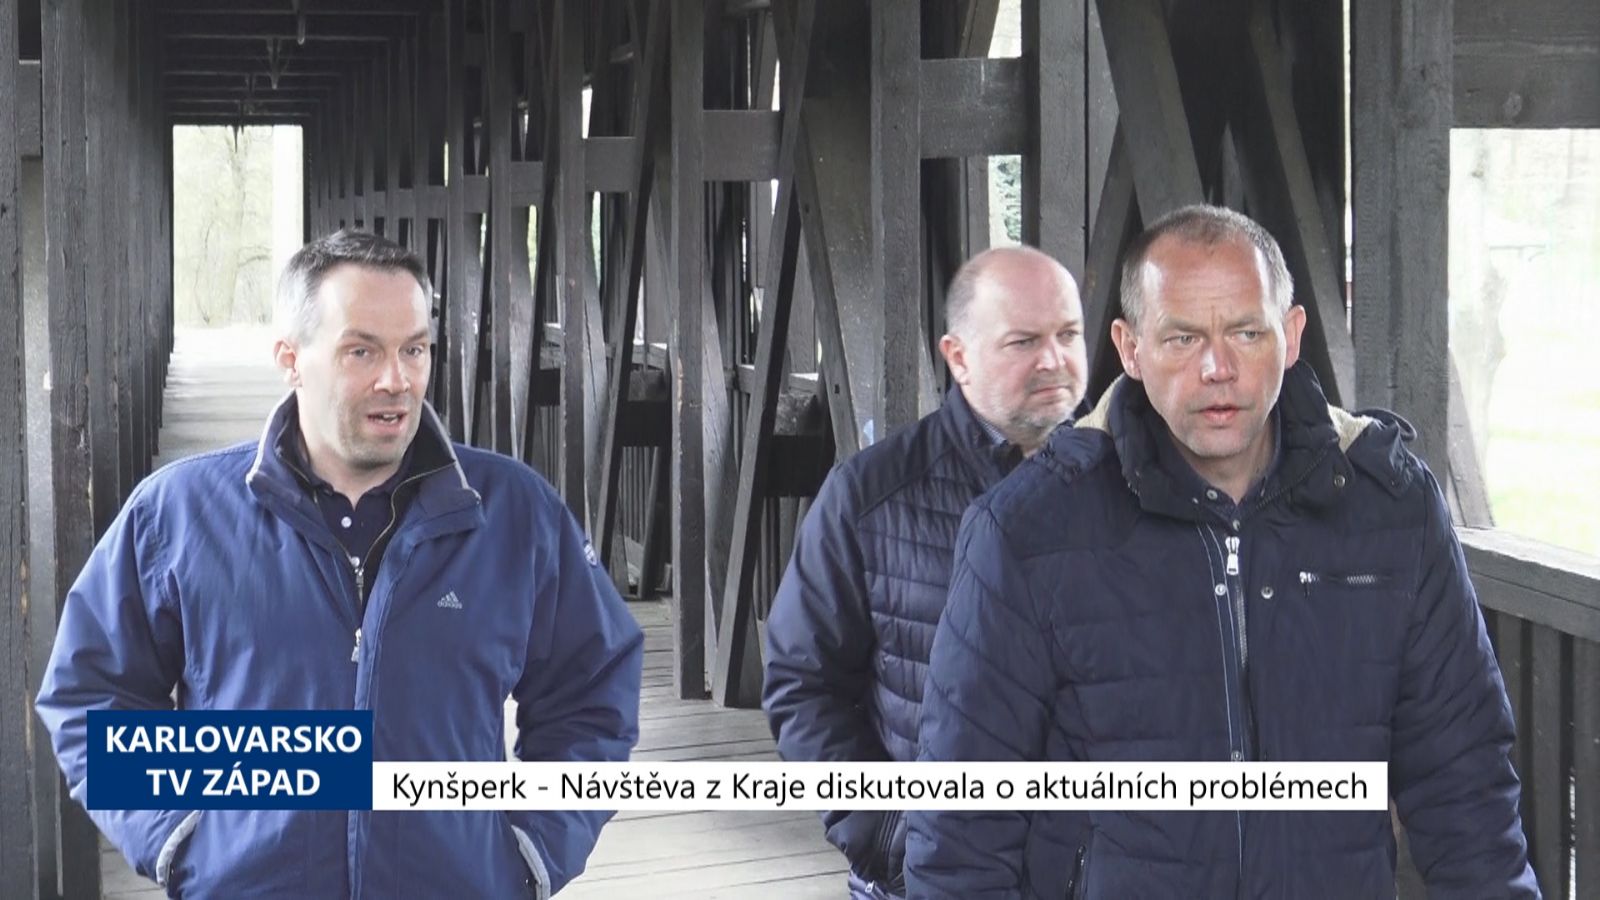 Kynšperk: Návštěva z Kraje diskutovala o aktuálních problémech (TV Západ)